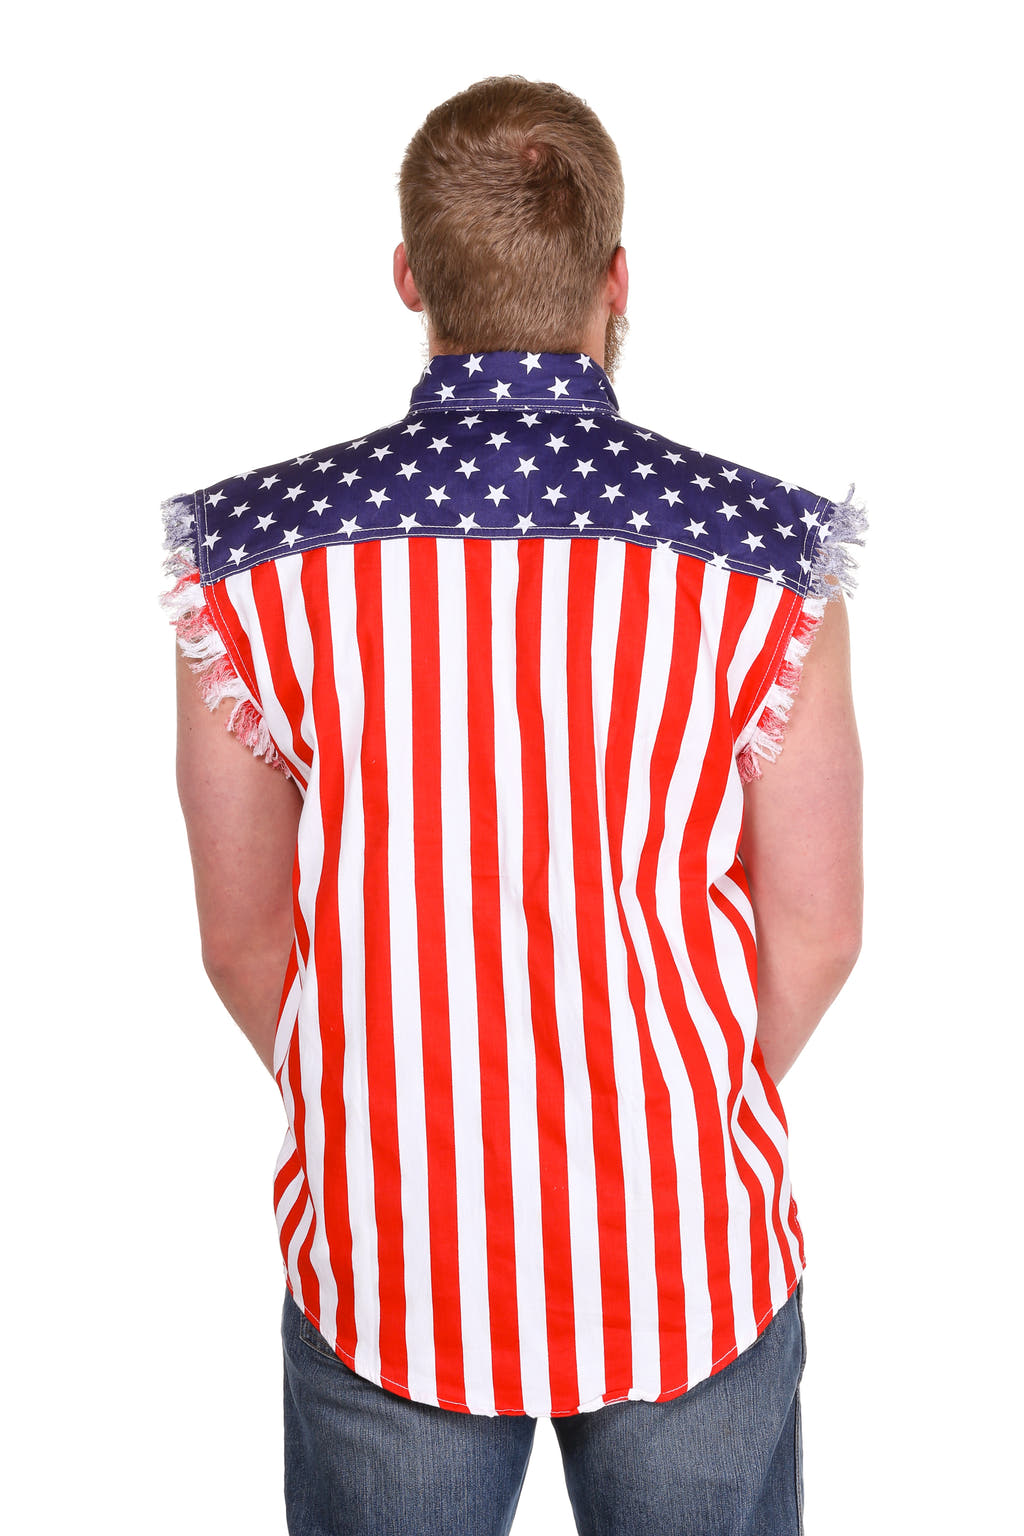 Men's American flag sleeveless denim shirt 